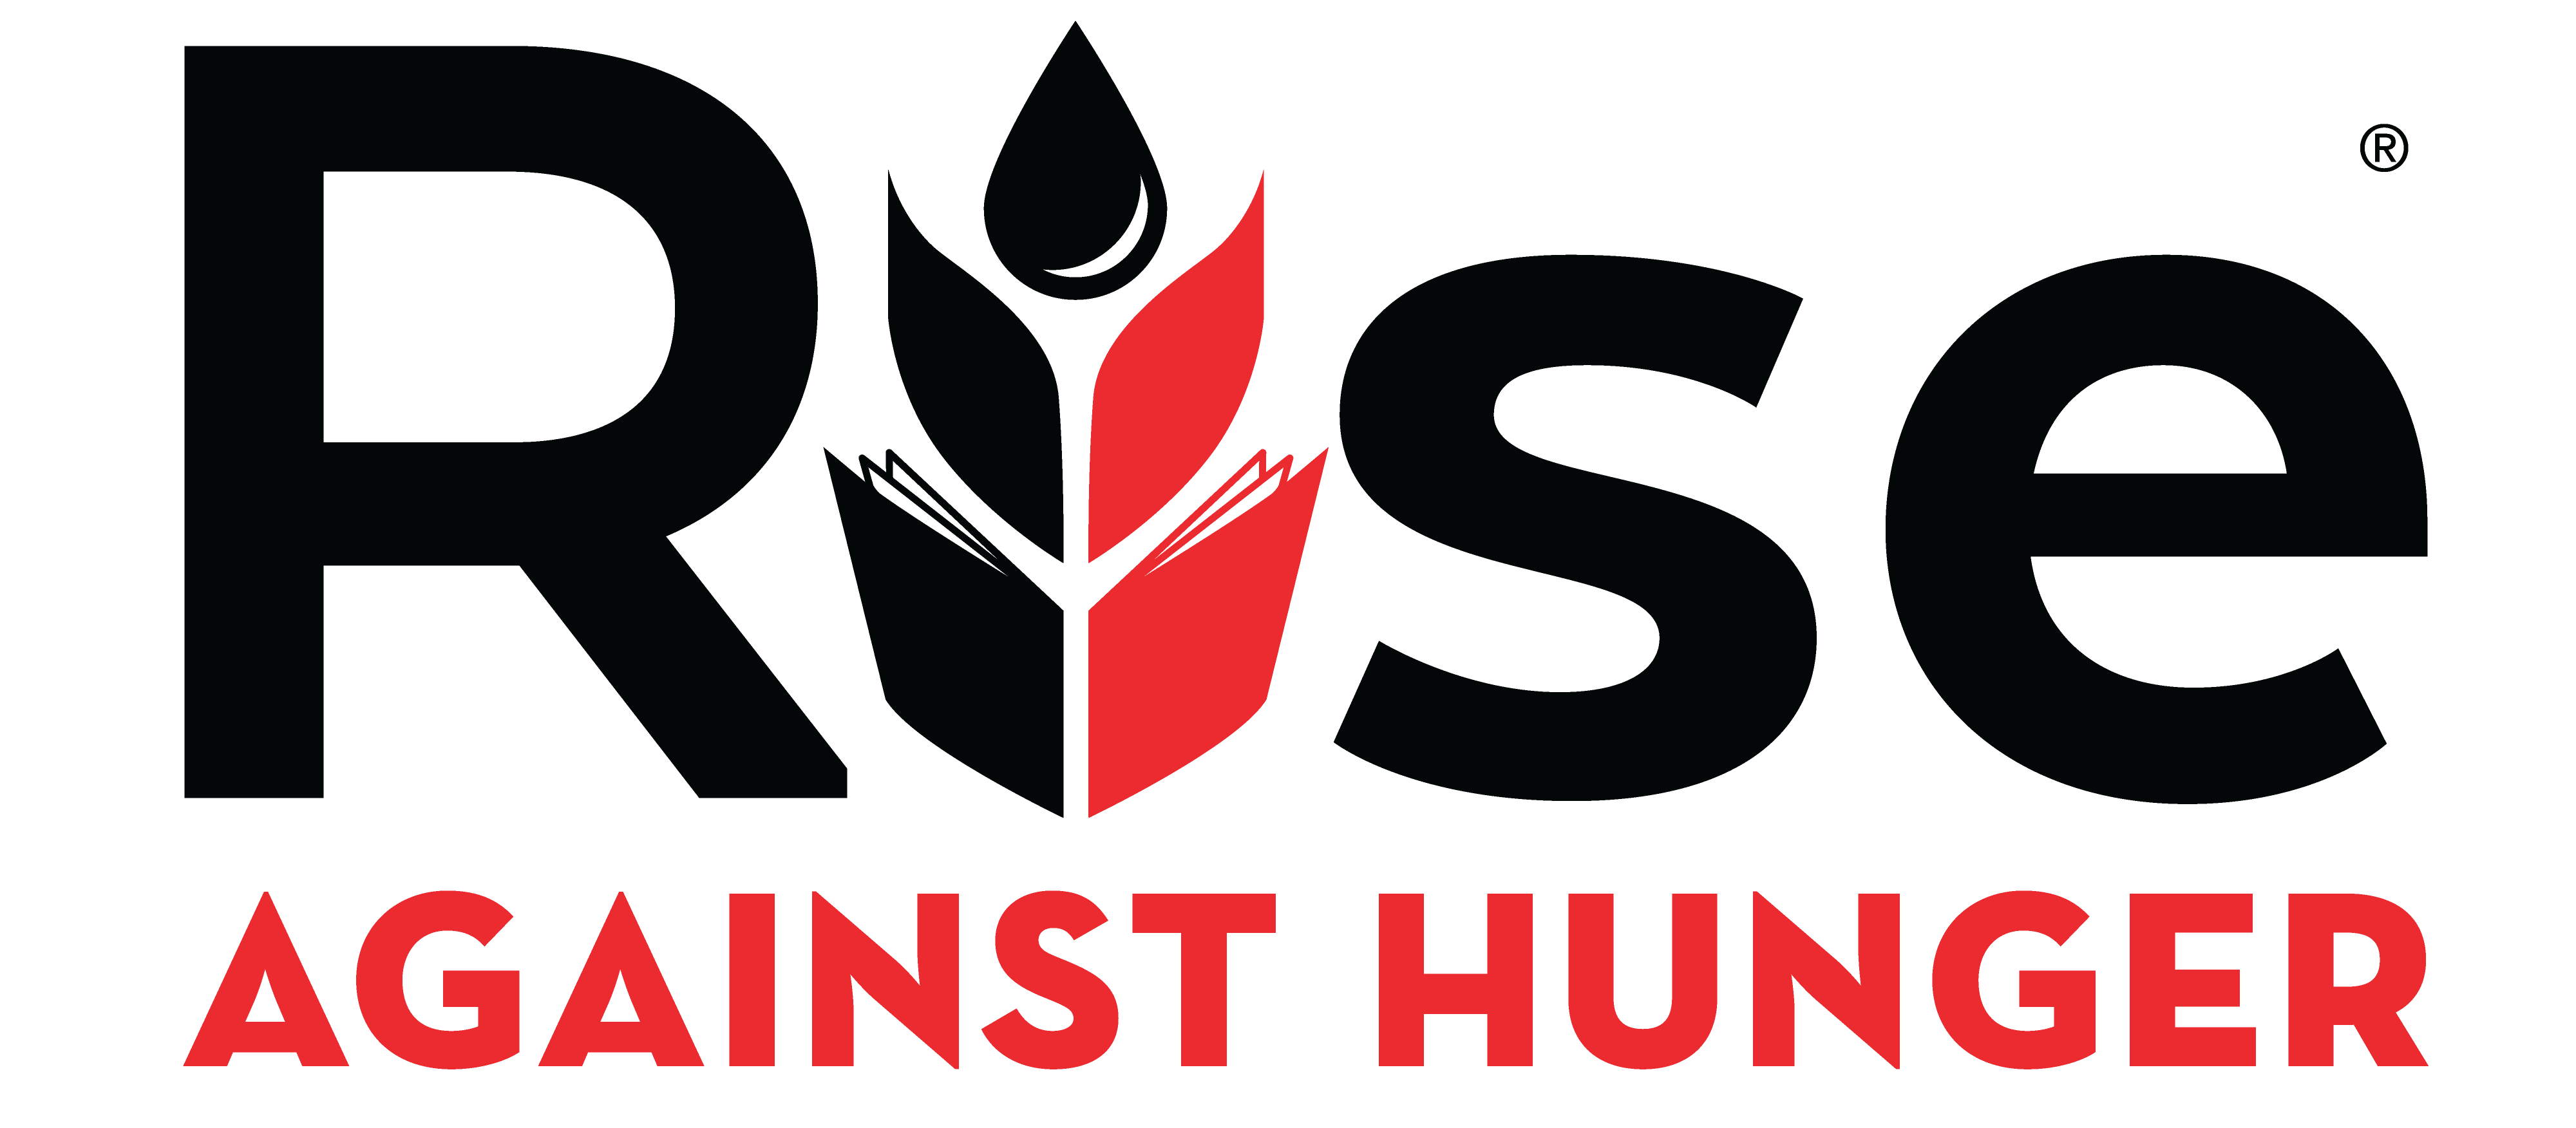 Rise Against Hunter